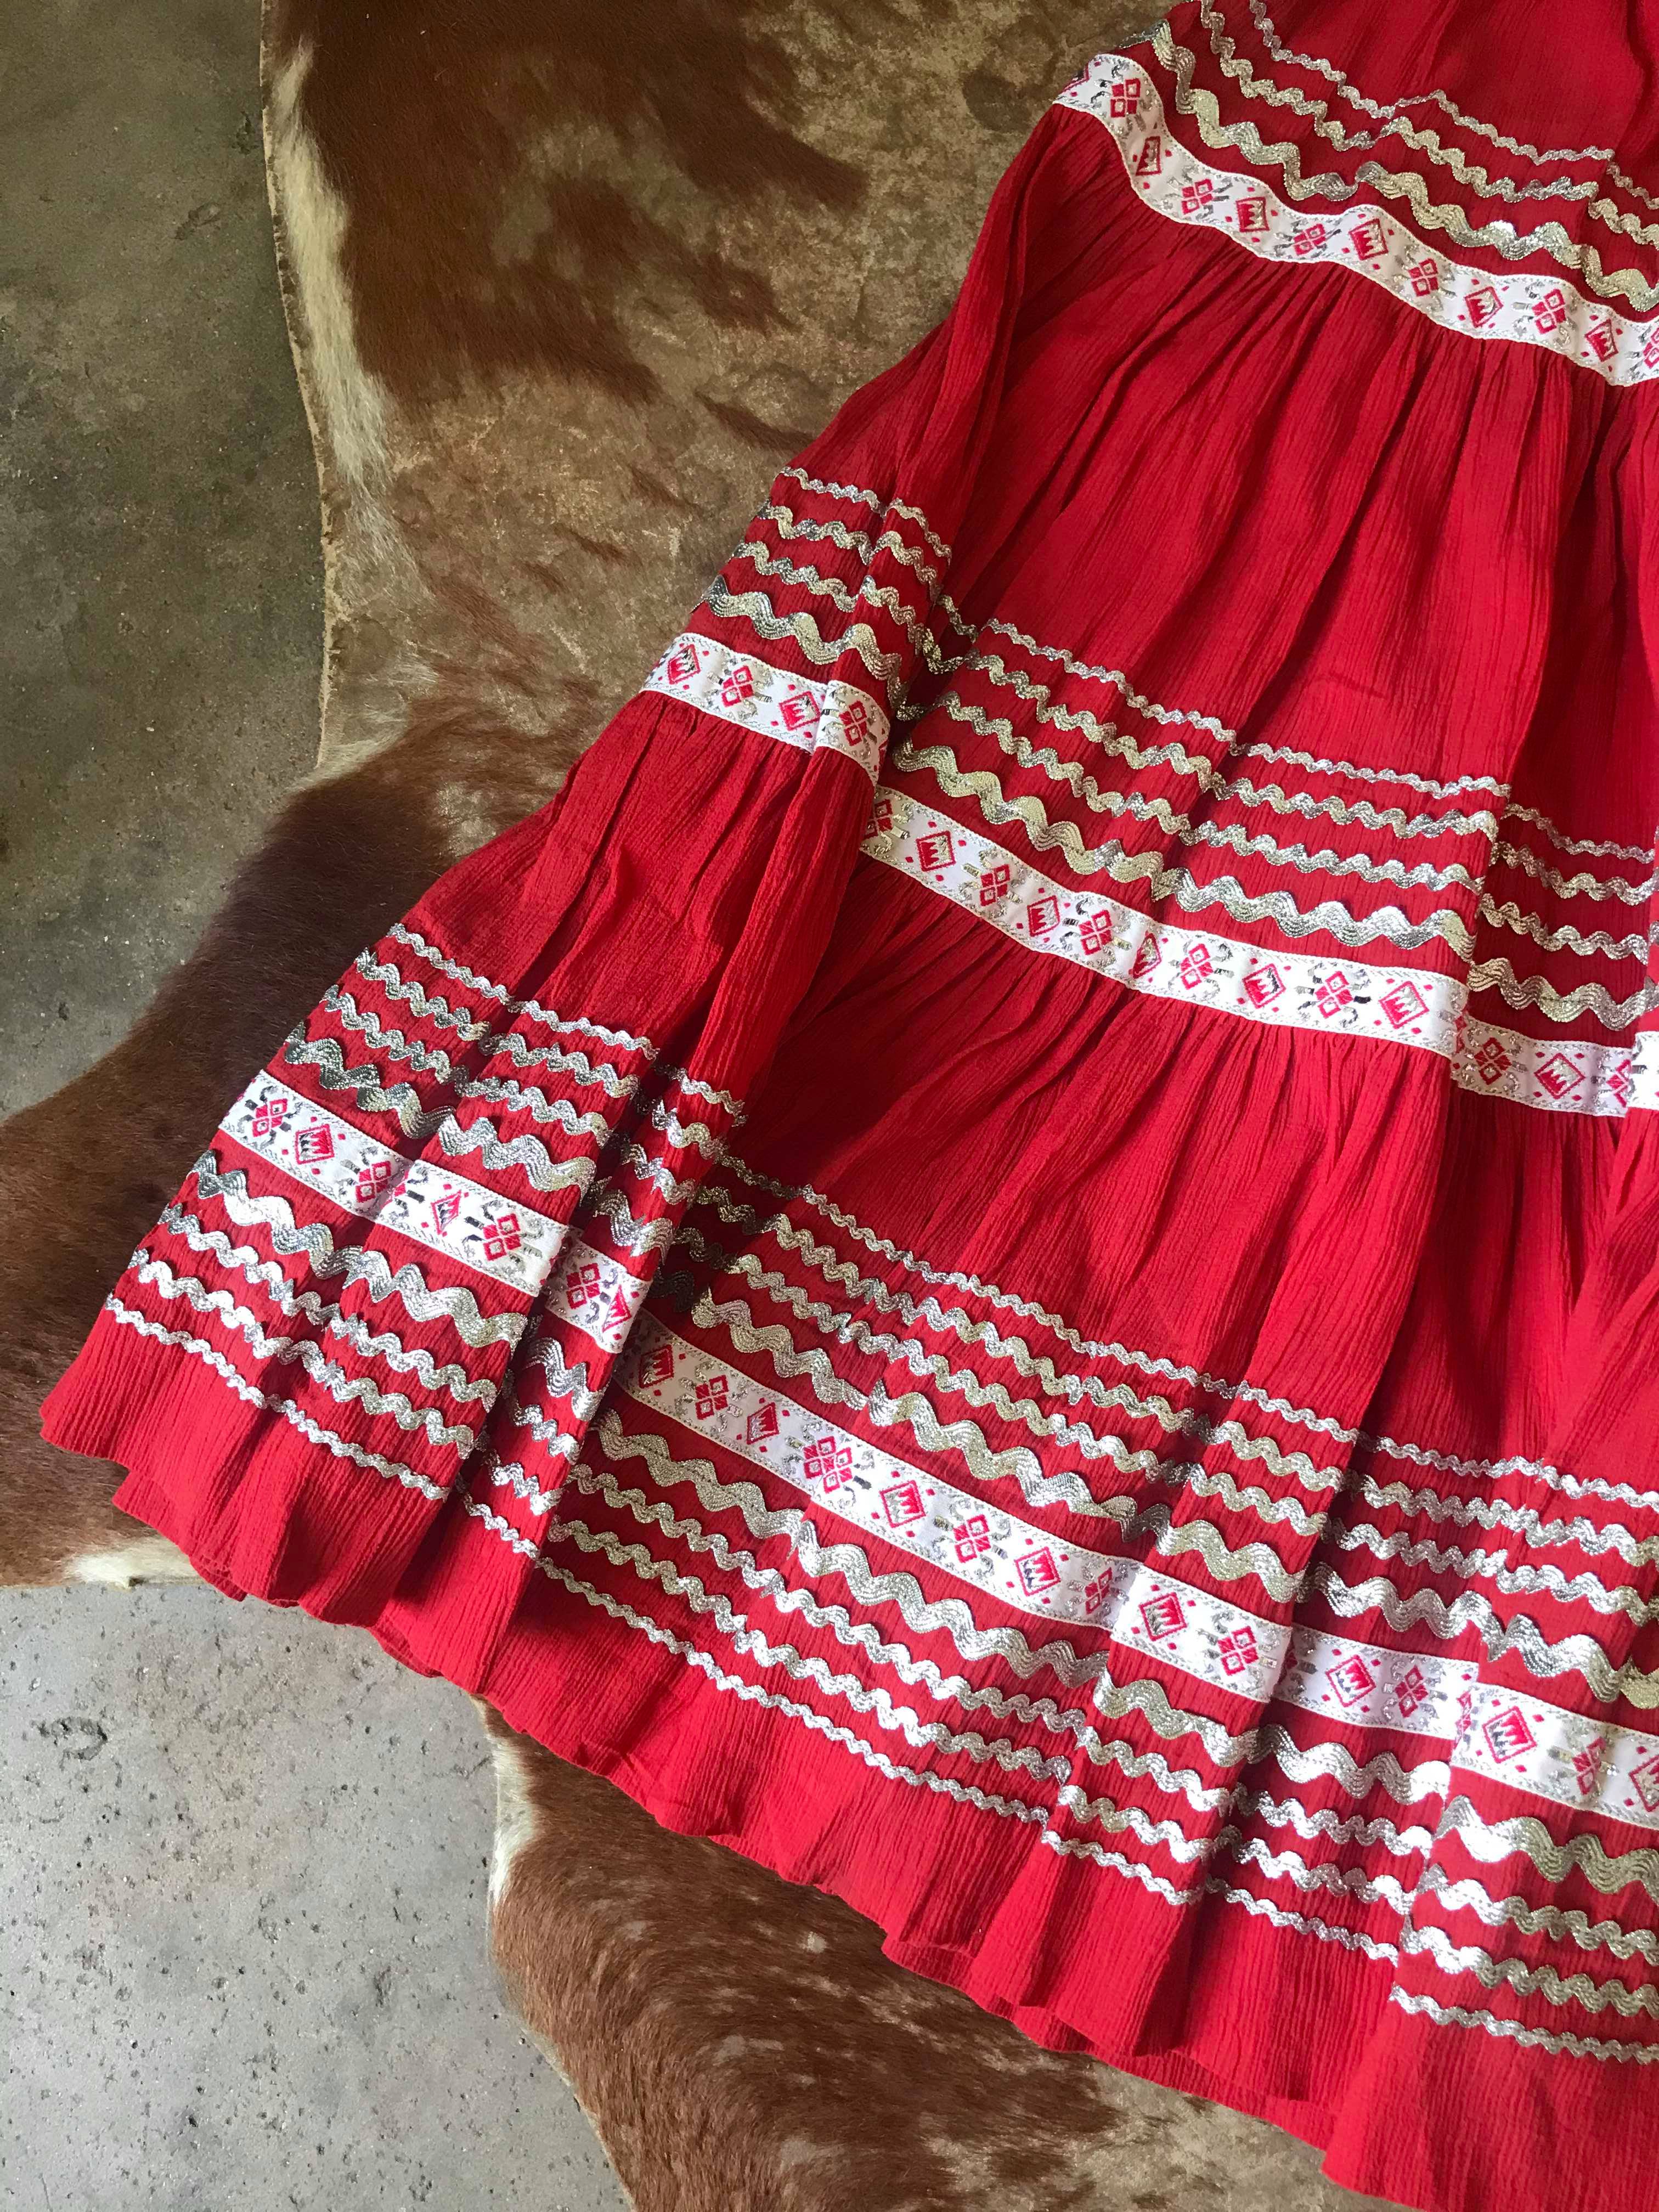 50s Folk Dress (Top + Skirt)